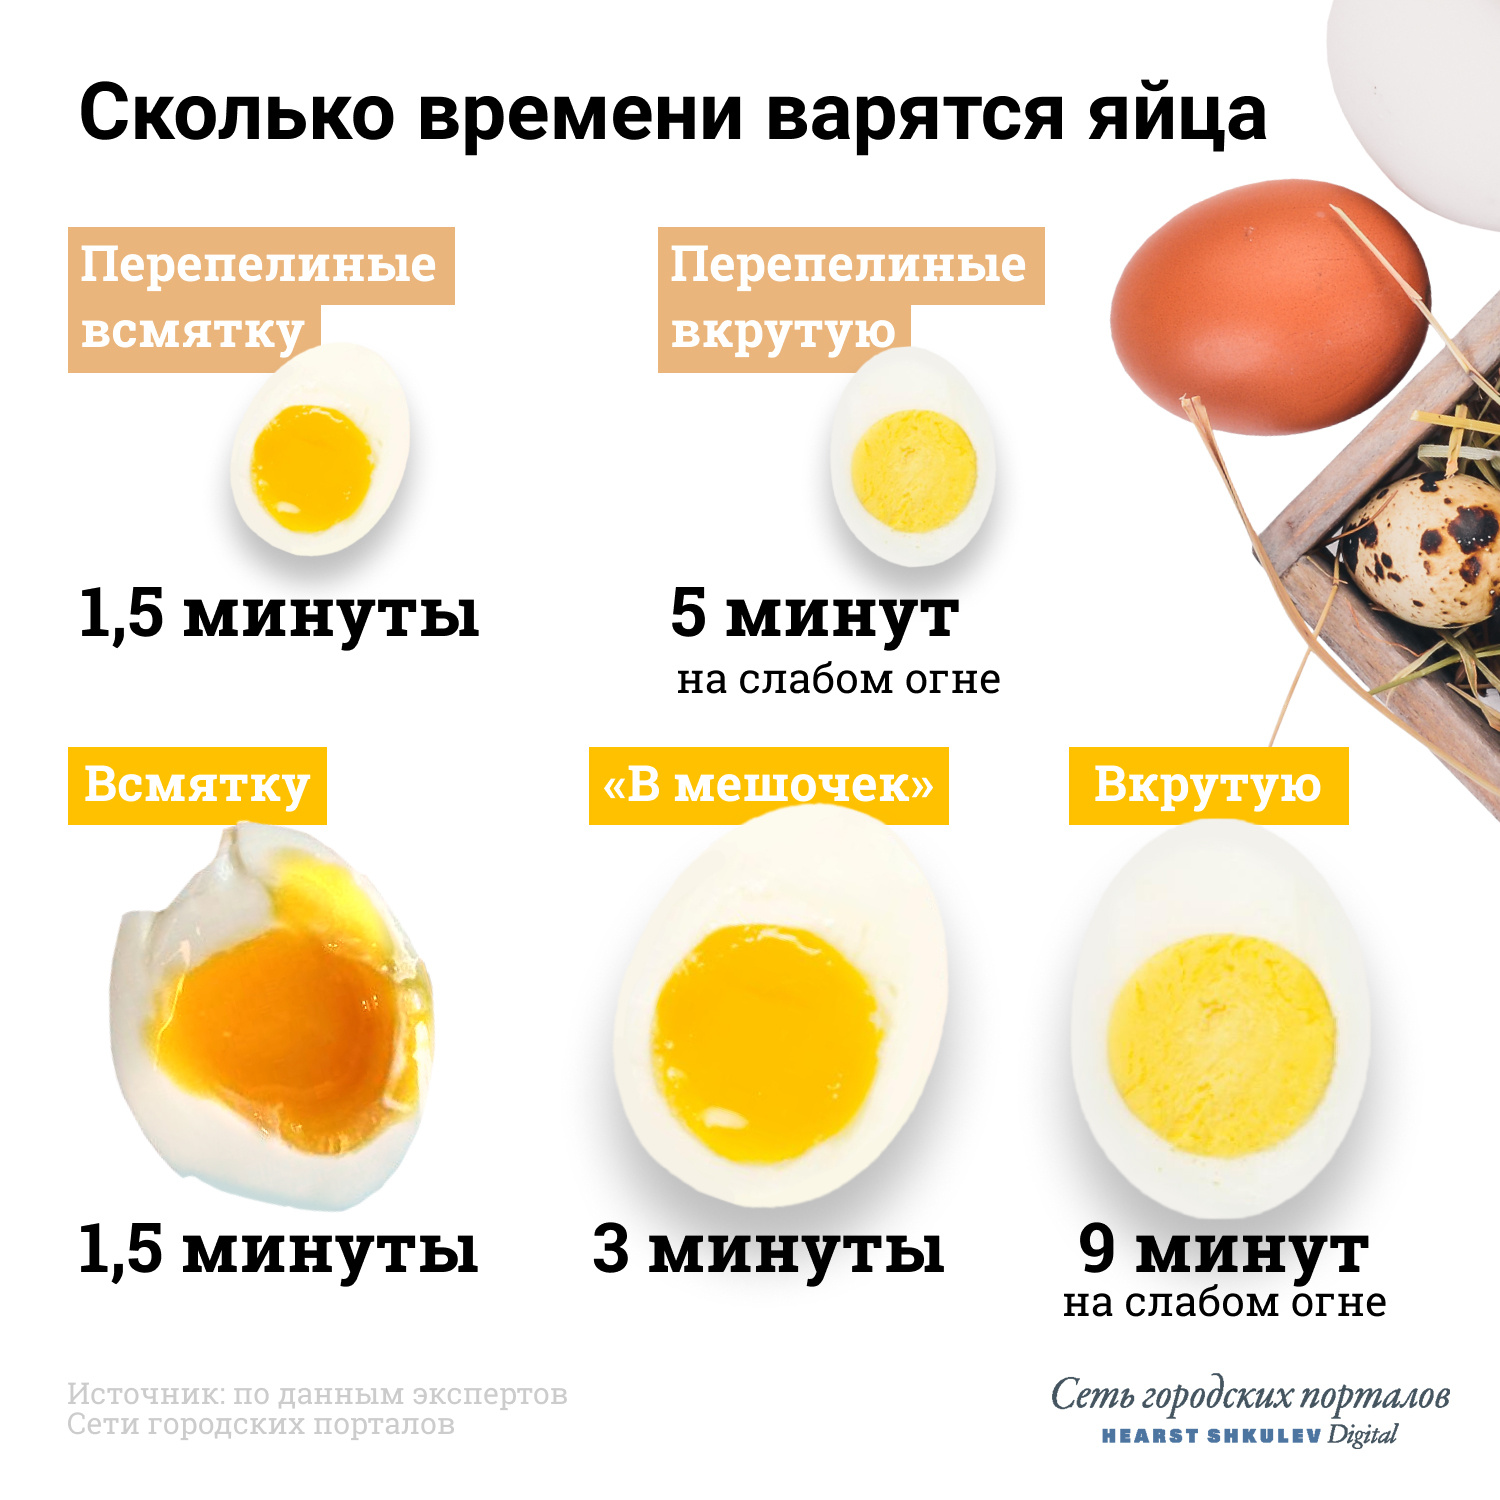 Почему варящиеся яйца всегда всплывают: основные причины